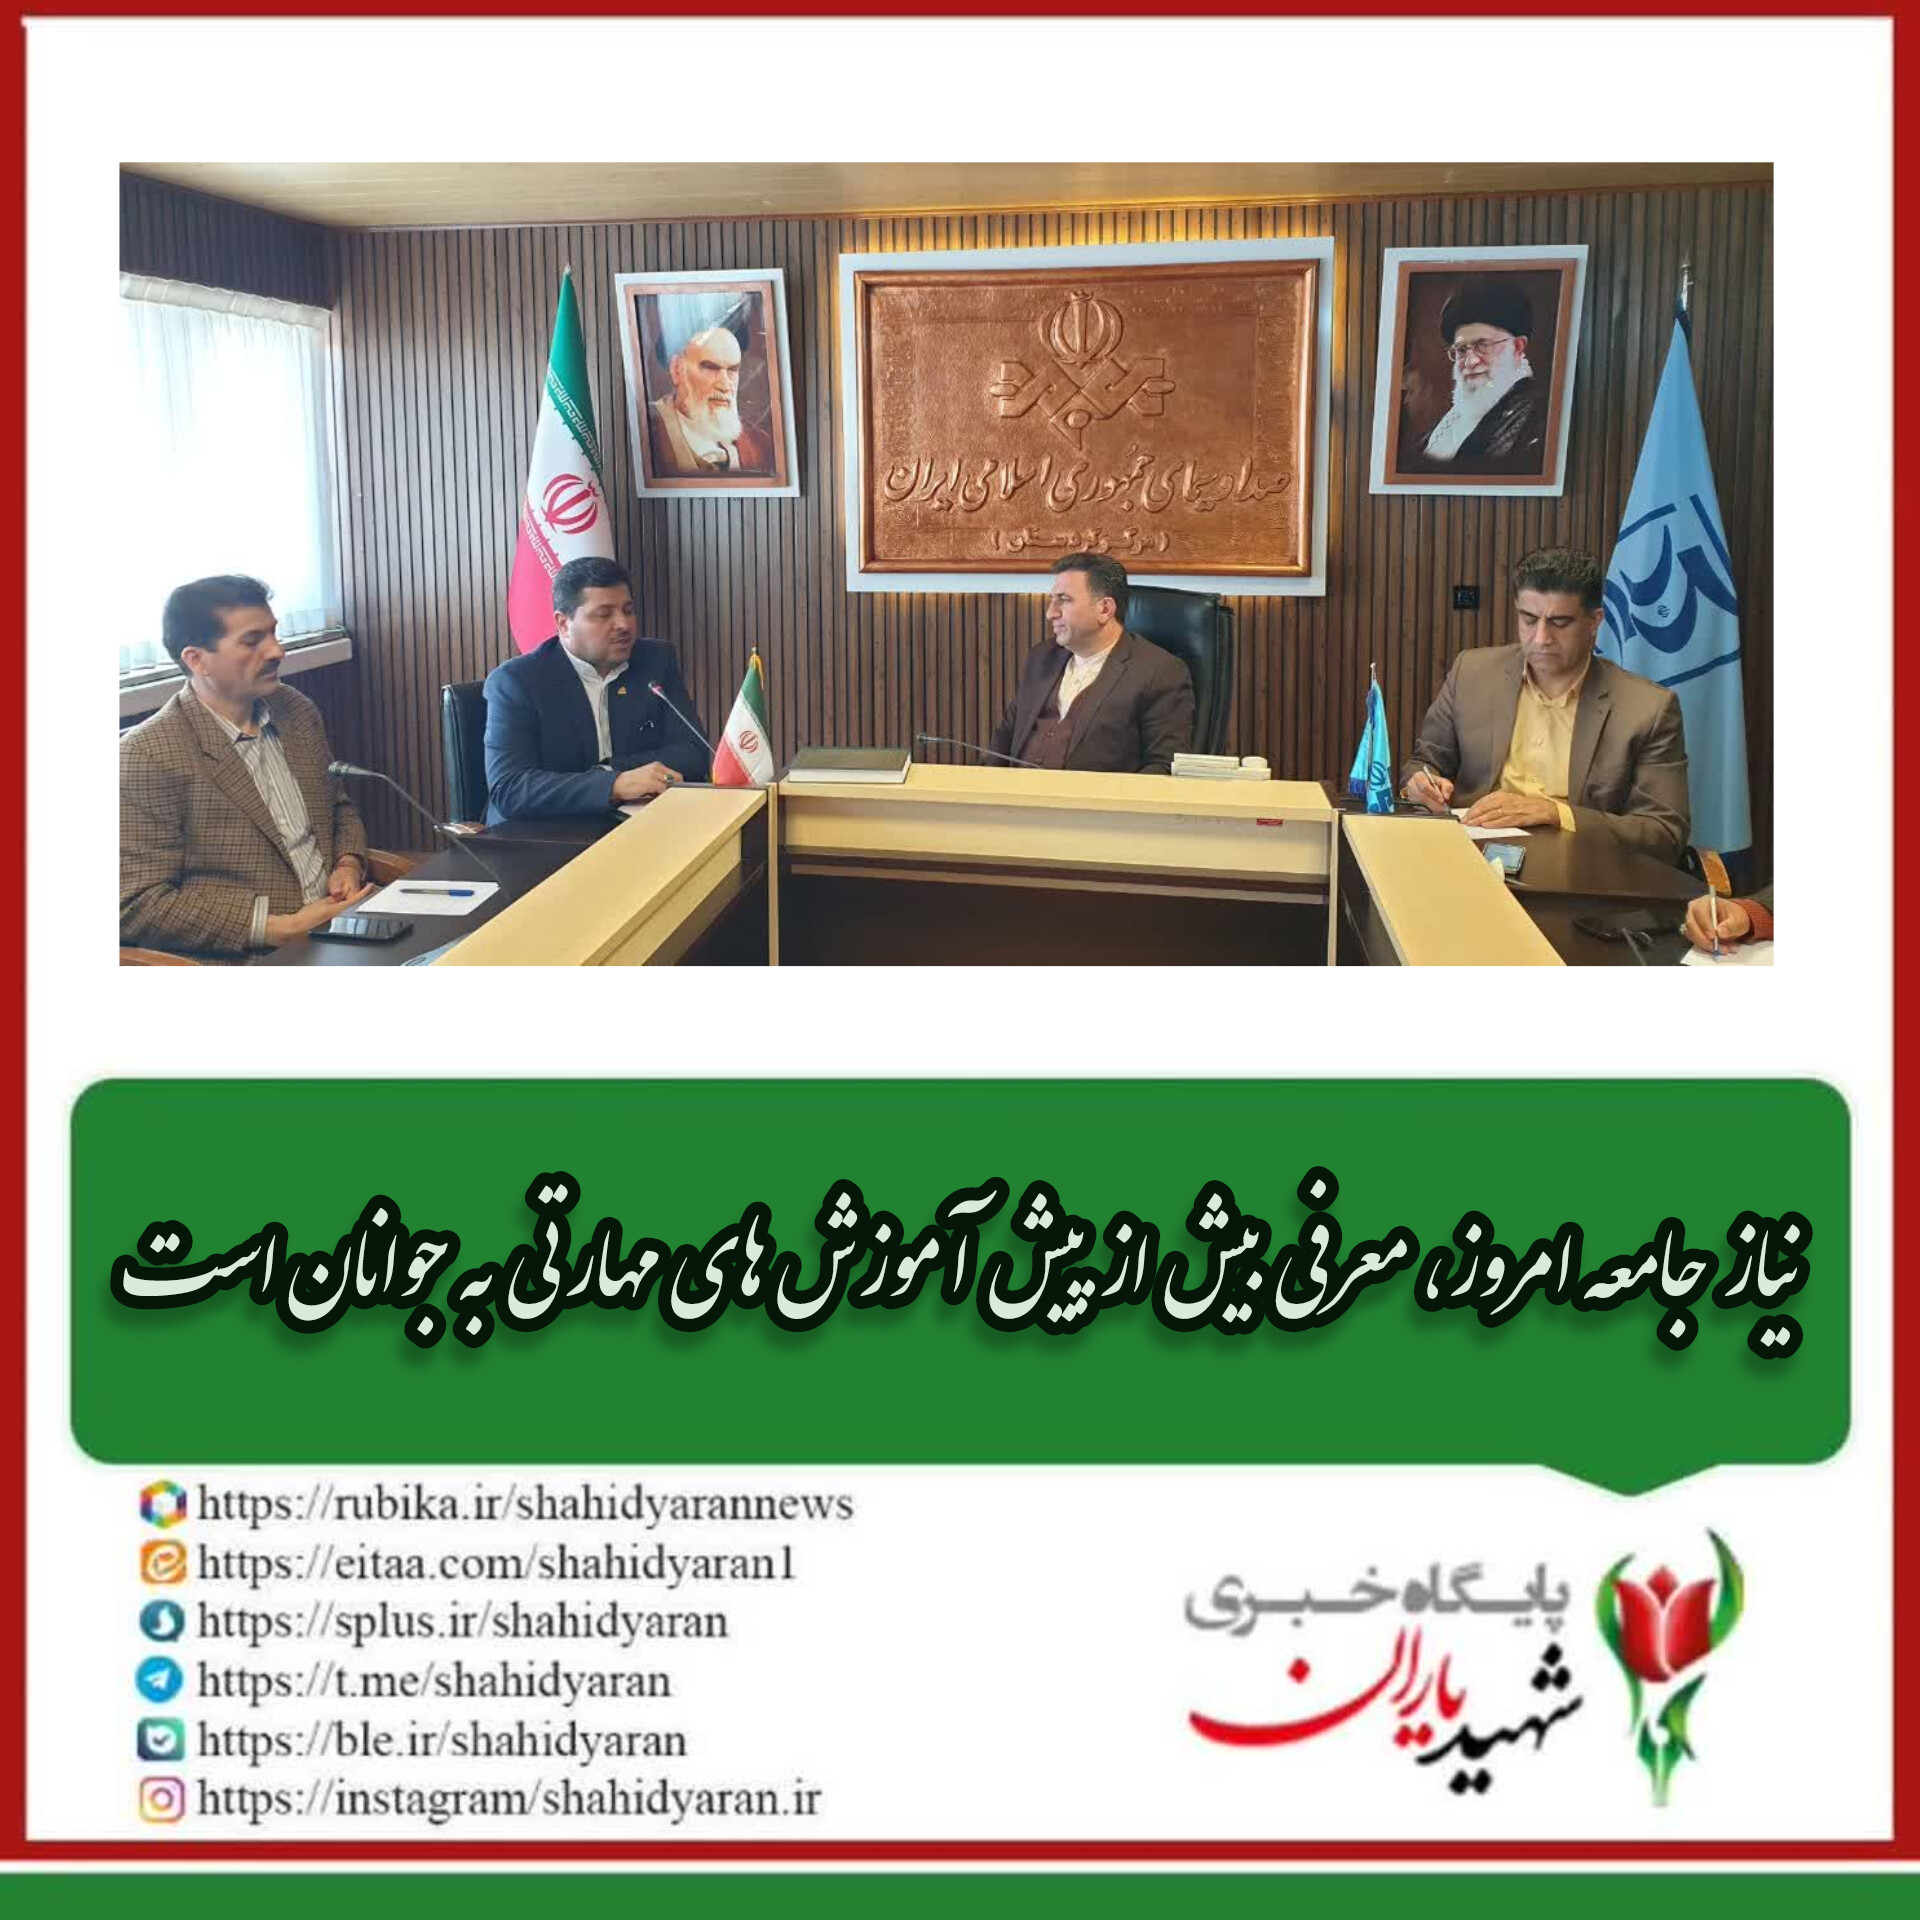 مدیرکل صداوسیما مرکز کردستان در دیدار با سرپرست اداره کل آموزش فنی و حرفه ای استان: